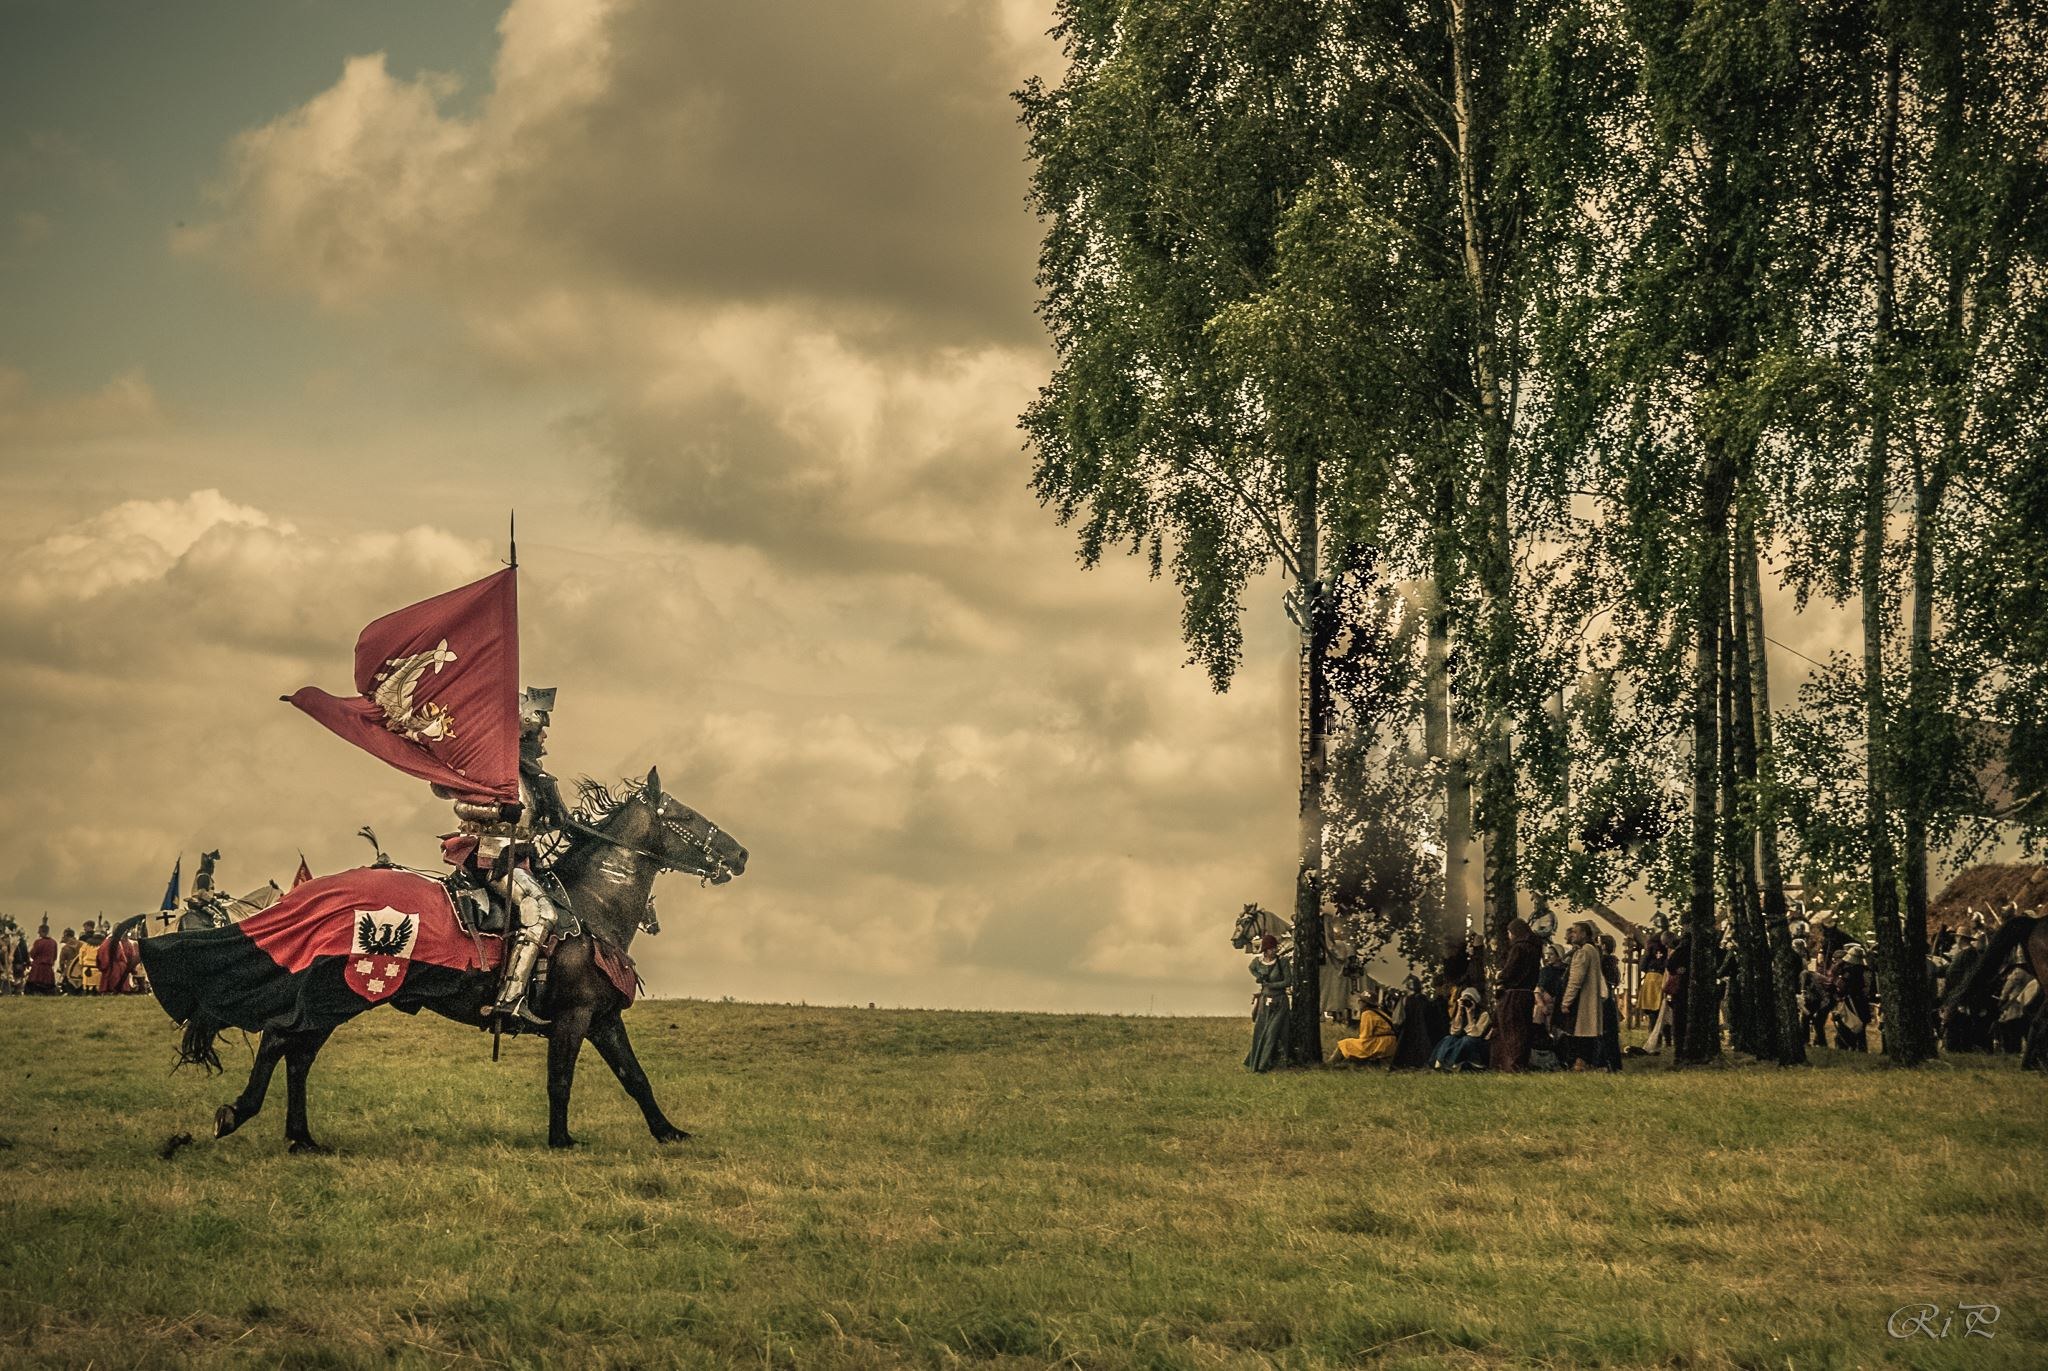 роль смоленских полков в грюнвальдской битве